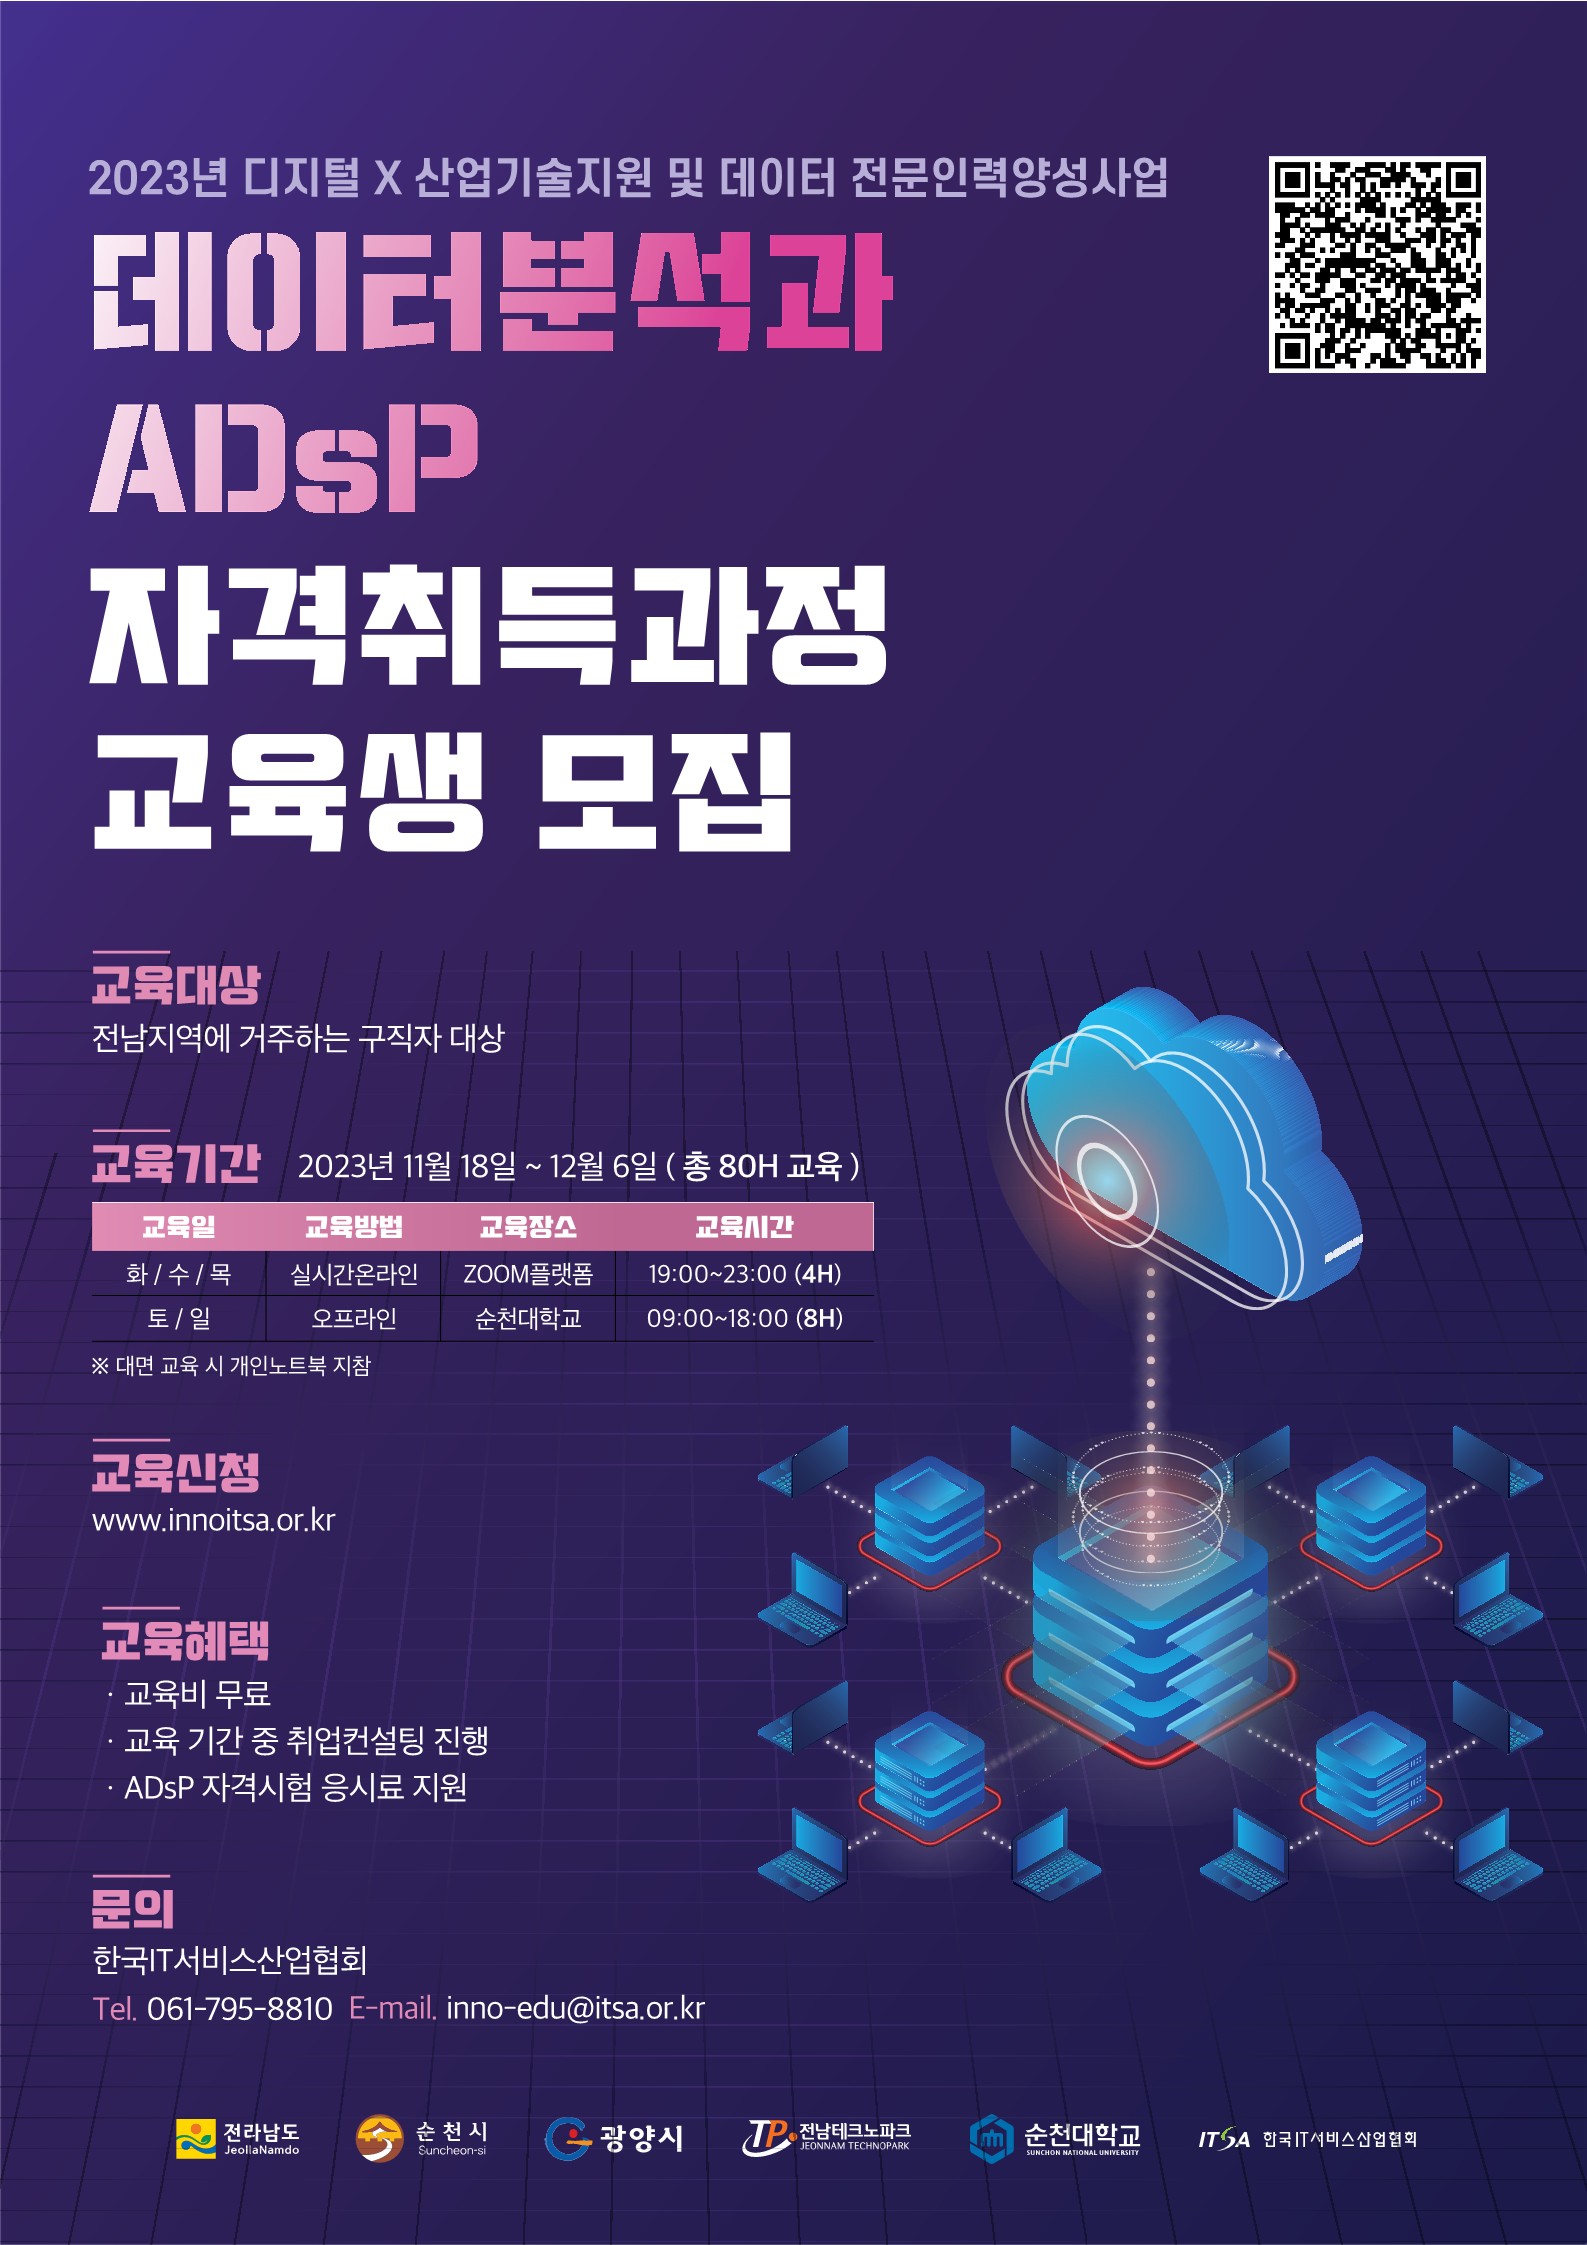 [한국취업센터] 23년도 ADsP 자격증 취득 과정